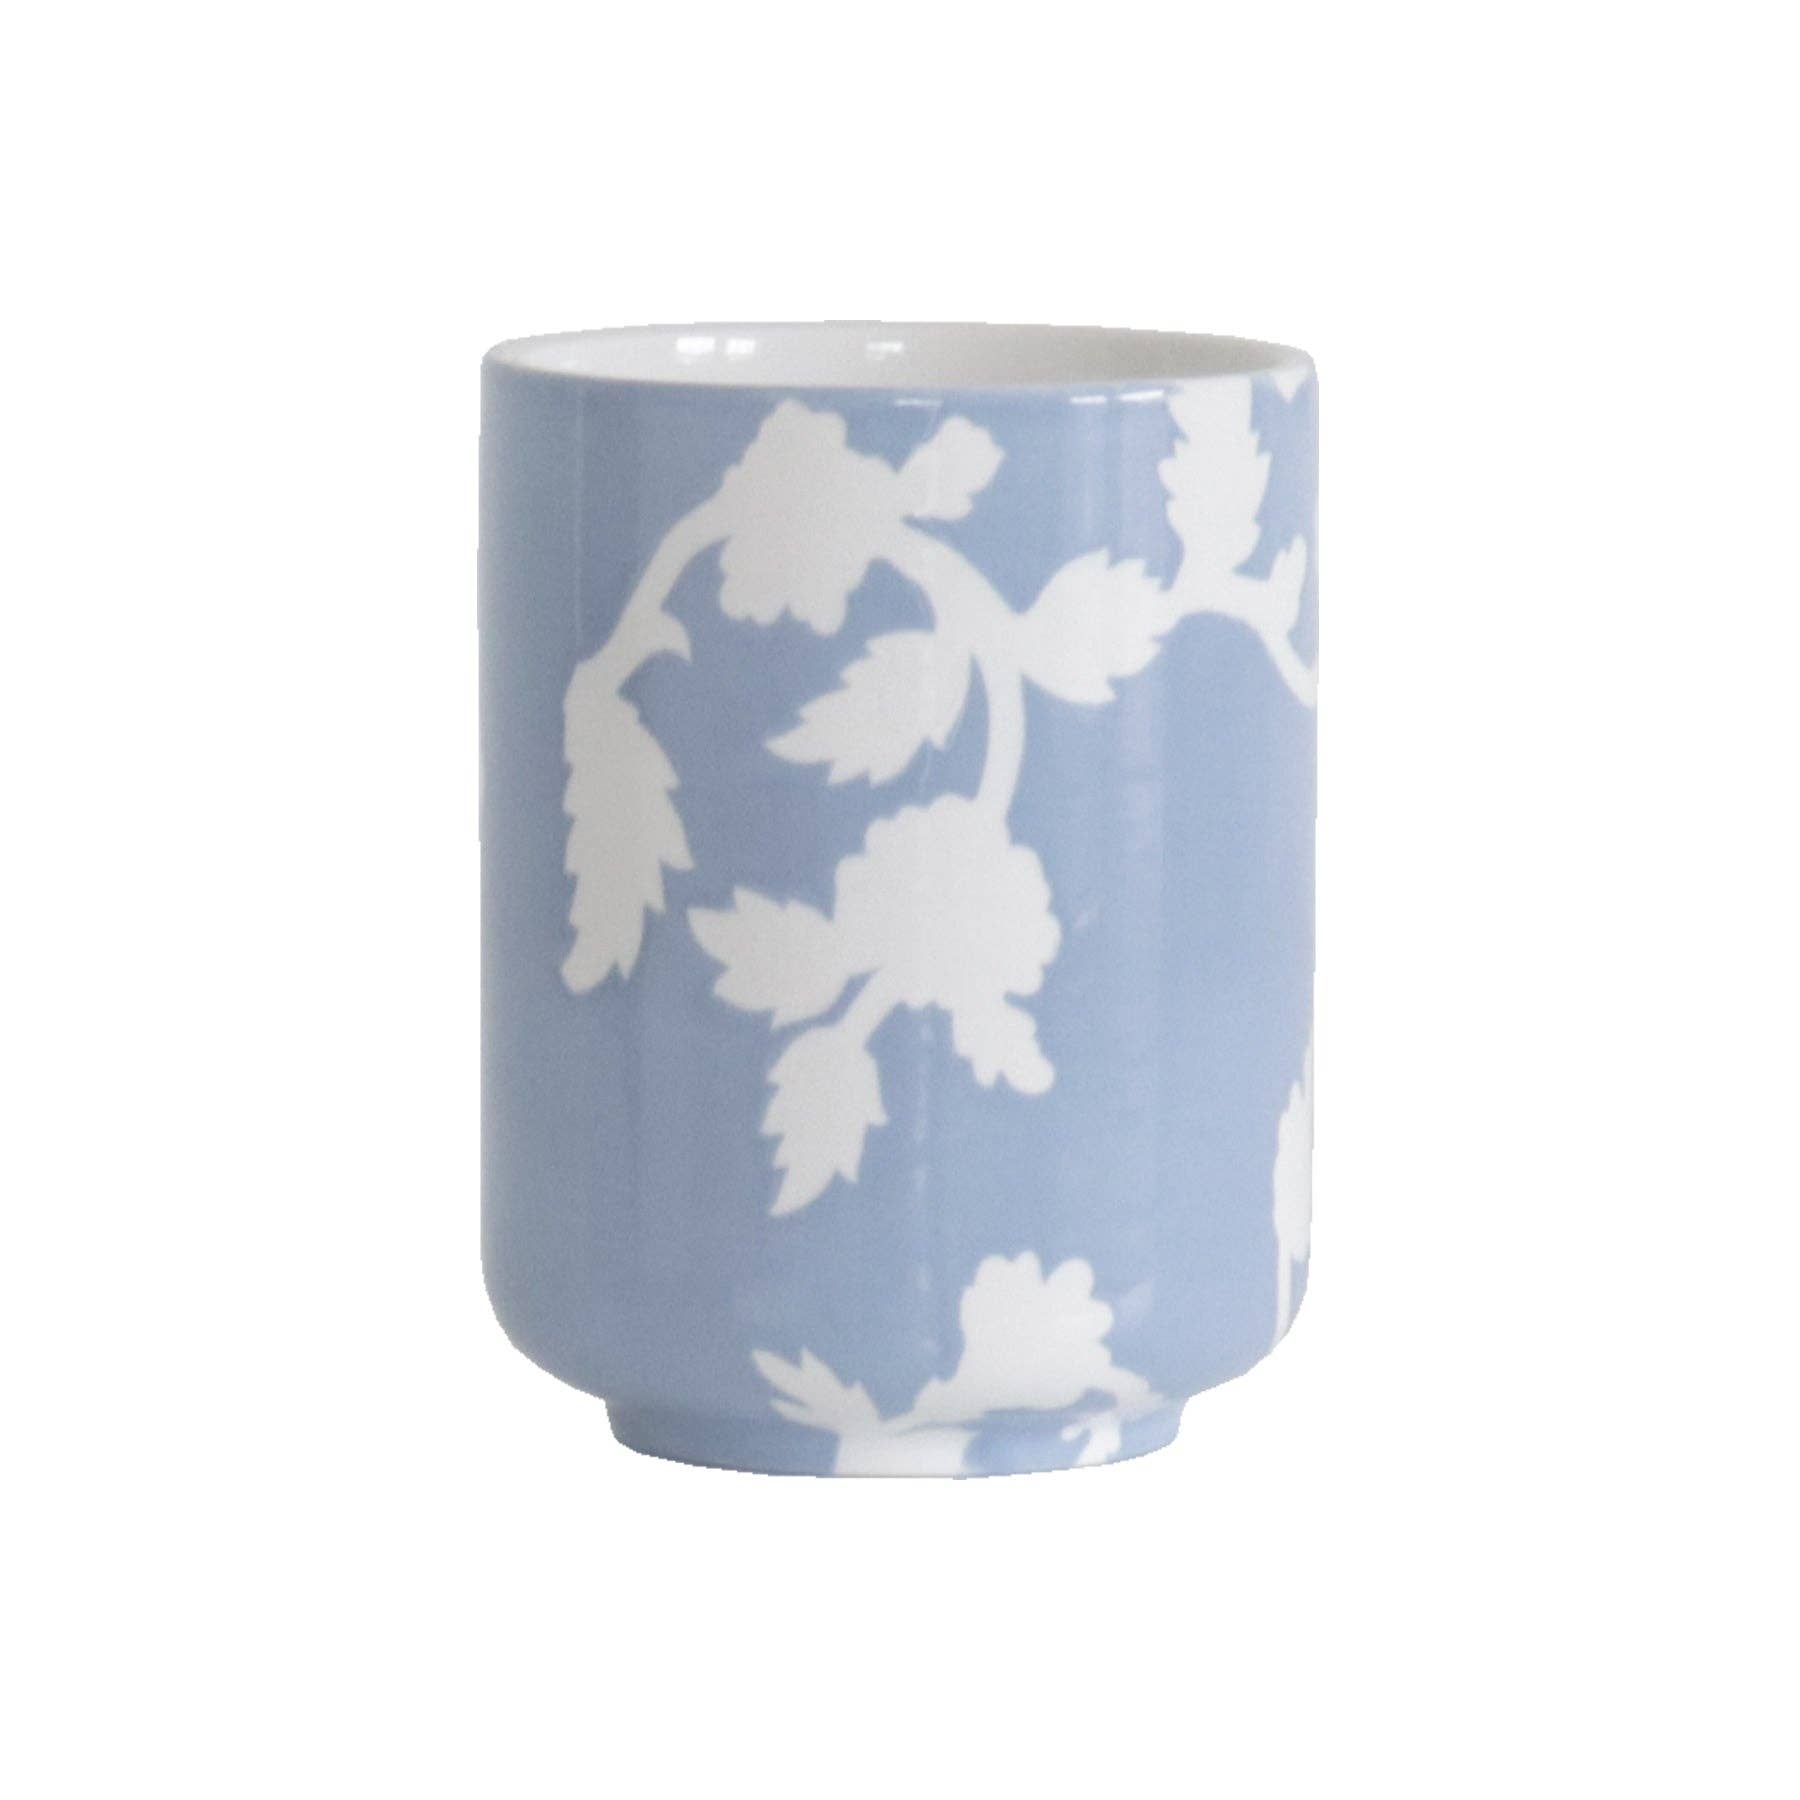 Chinoiserie Vase/ Utensil Holder - Serenity Blue - The Preppy Bunny